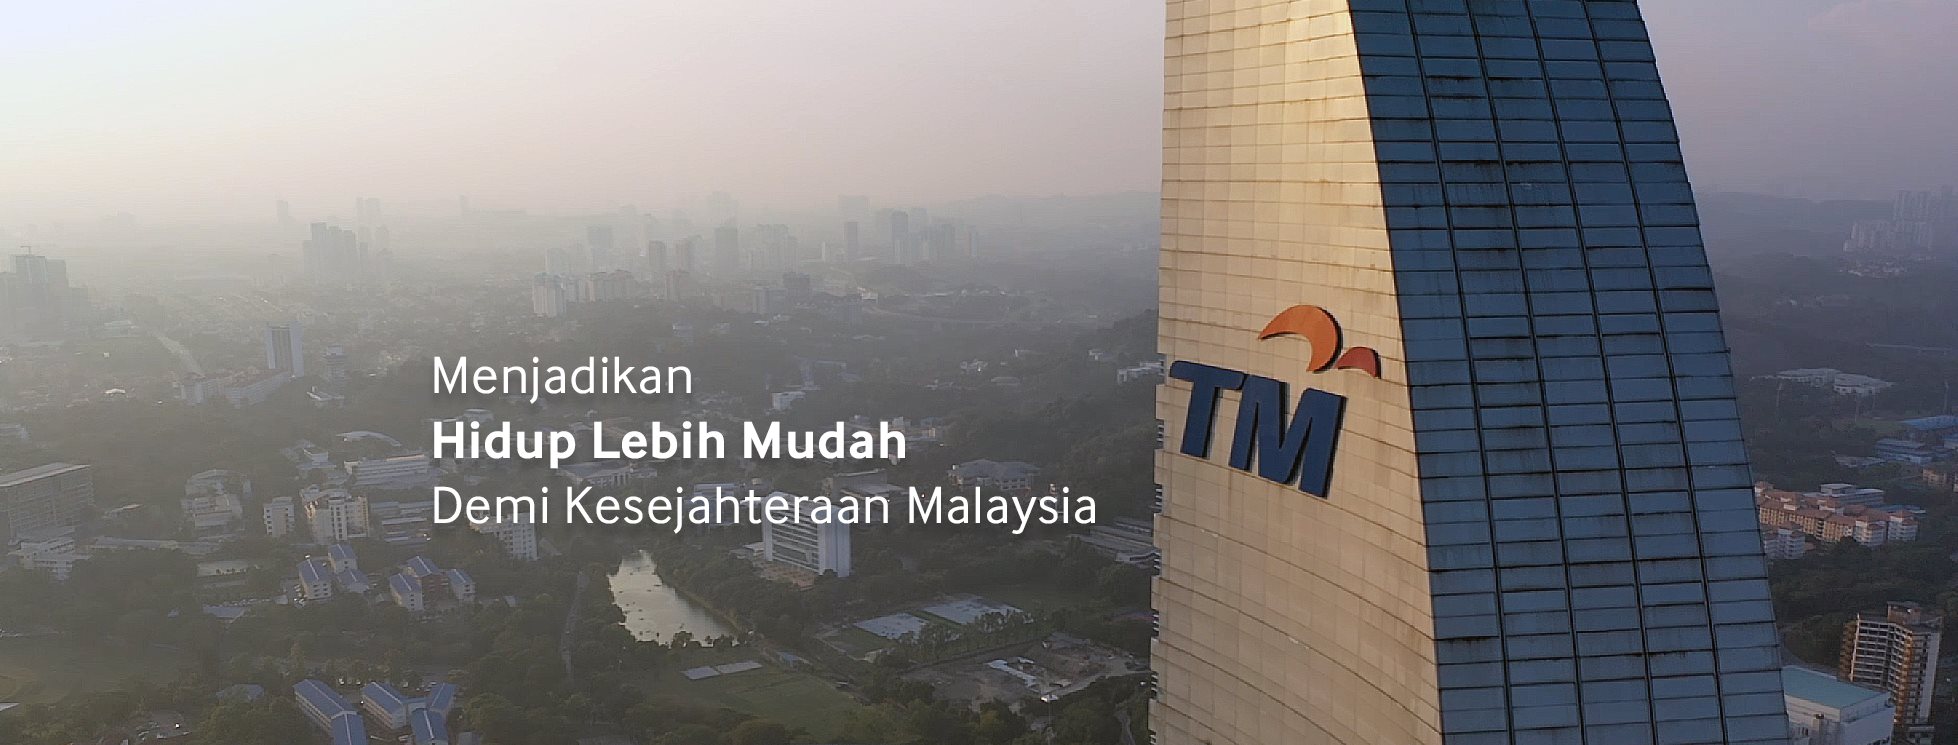 menara TM  5g network syok Hidup Lebih Mudah telekom malaysia